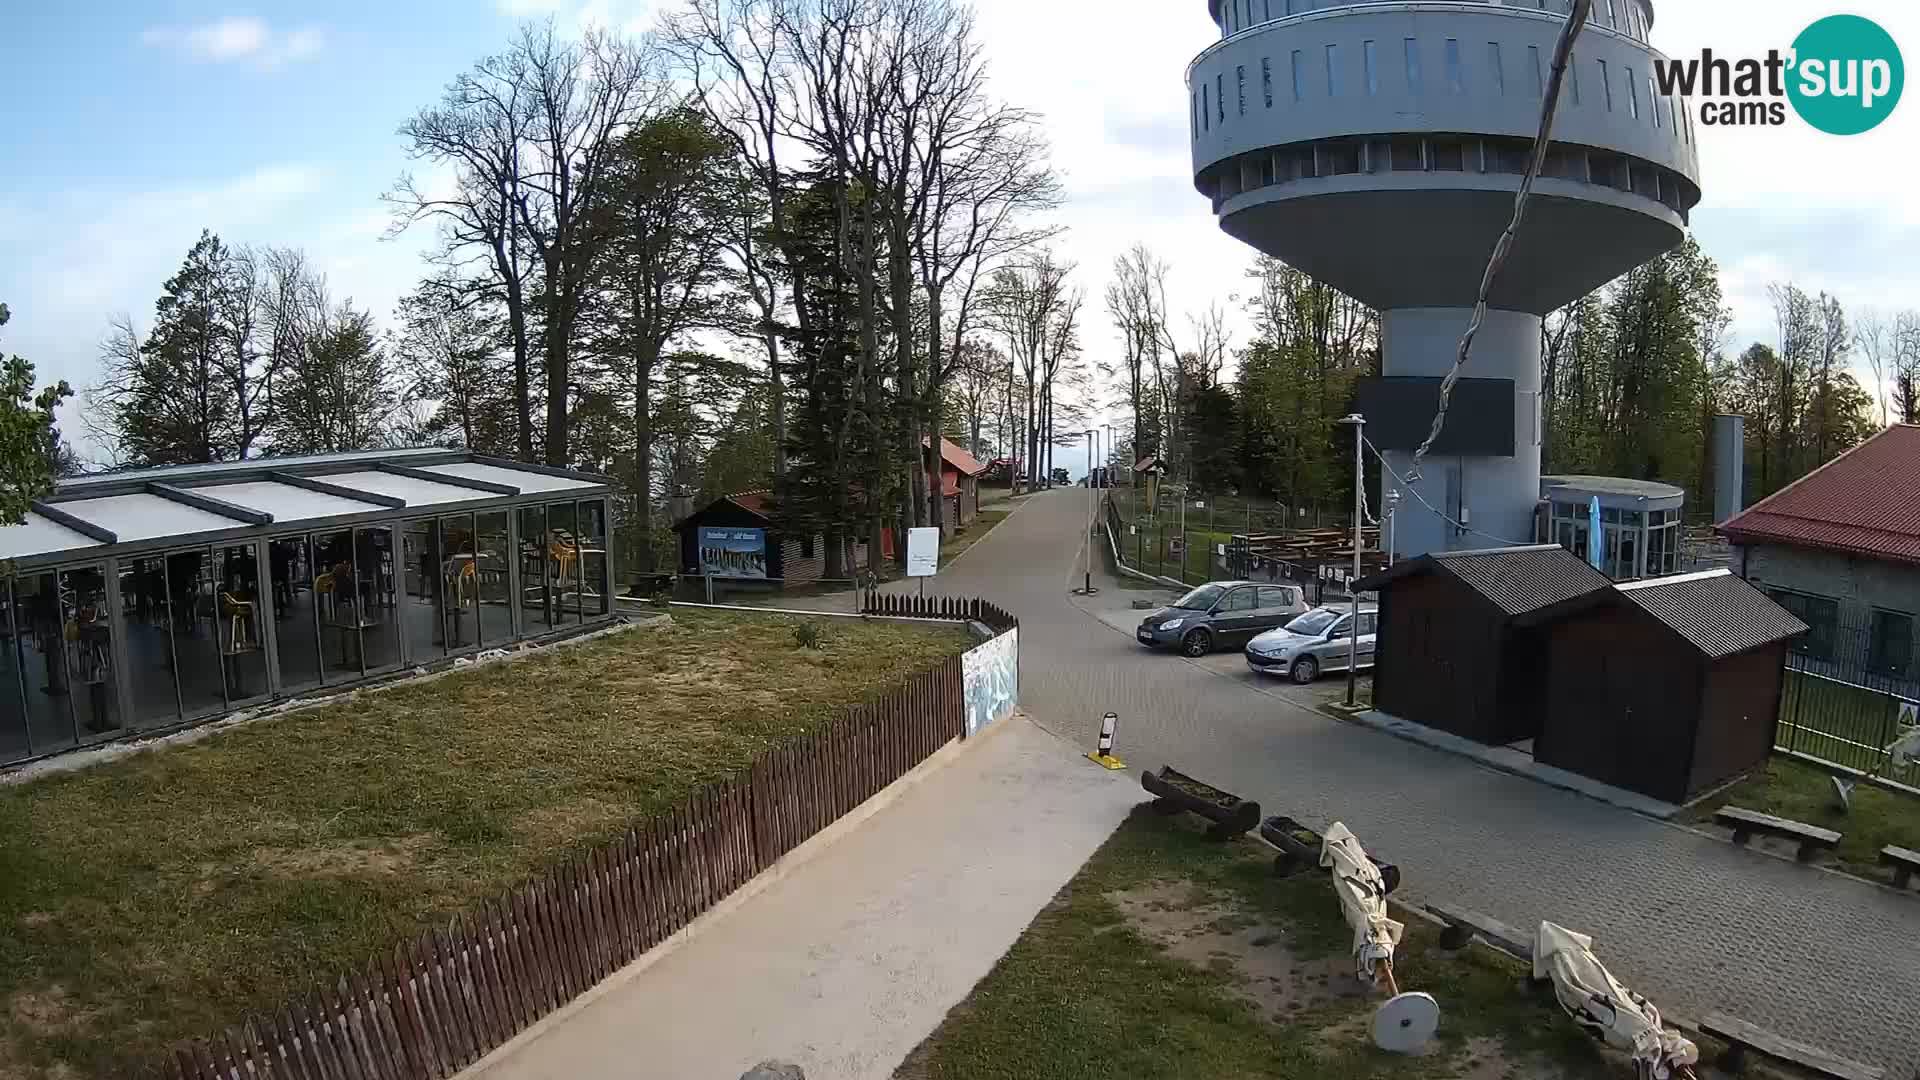 Sljeme – Medvednica – ski center near Zagreb